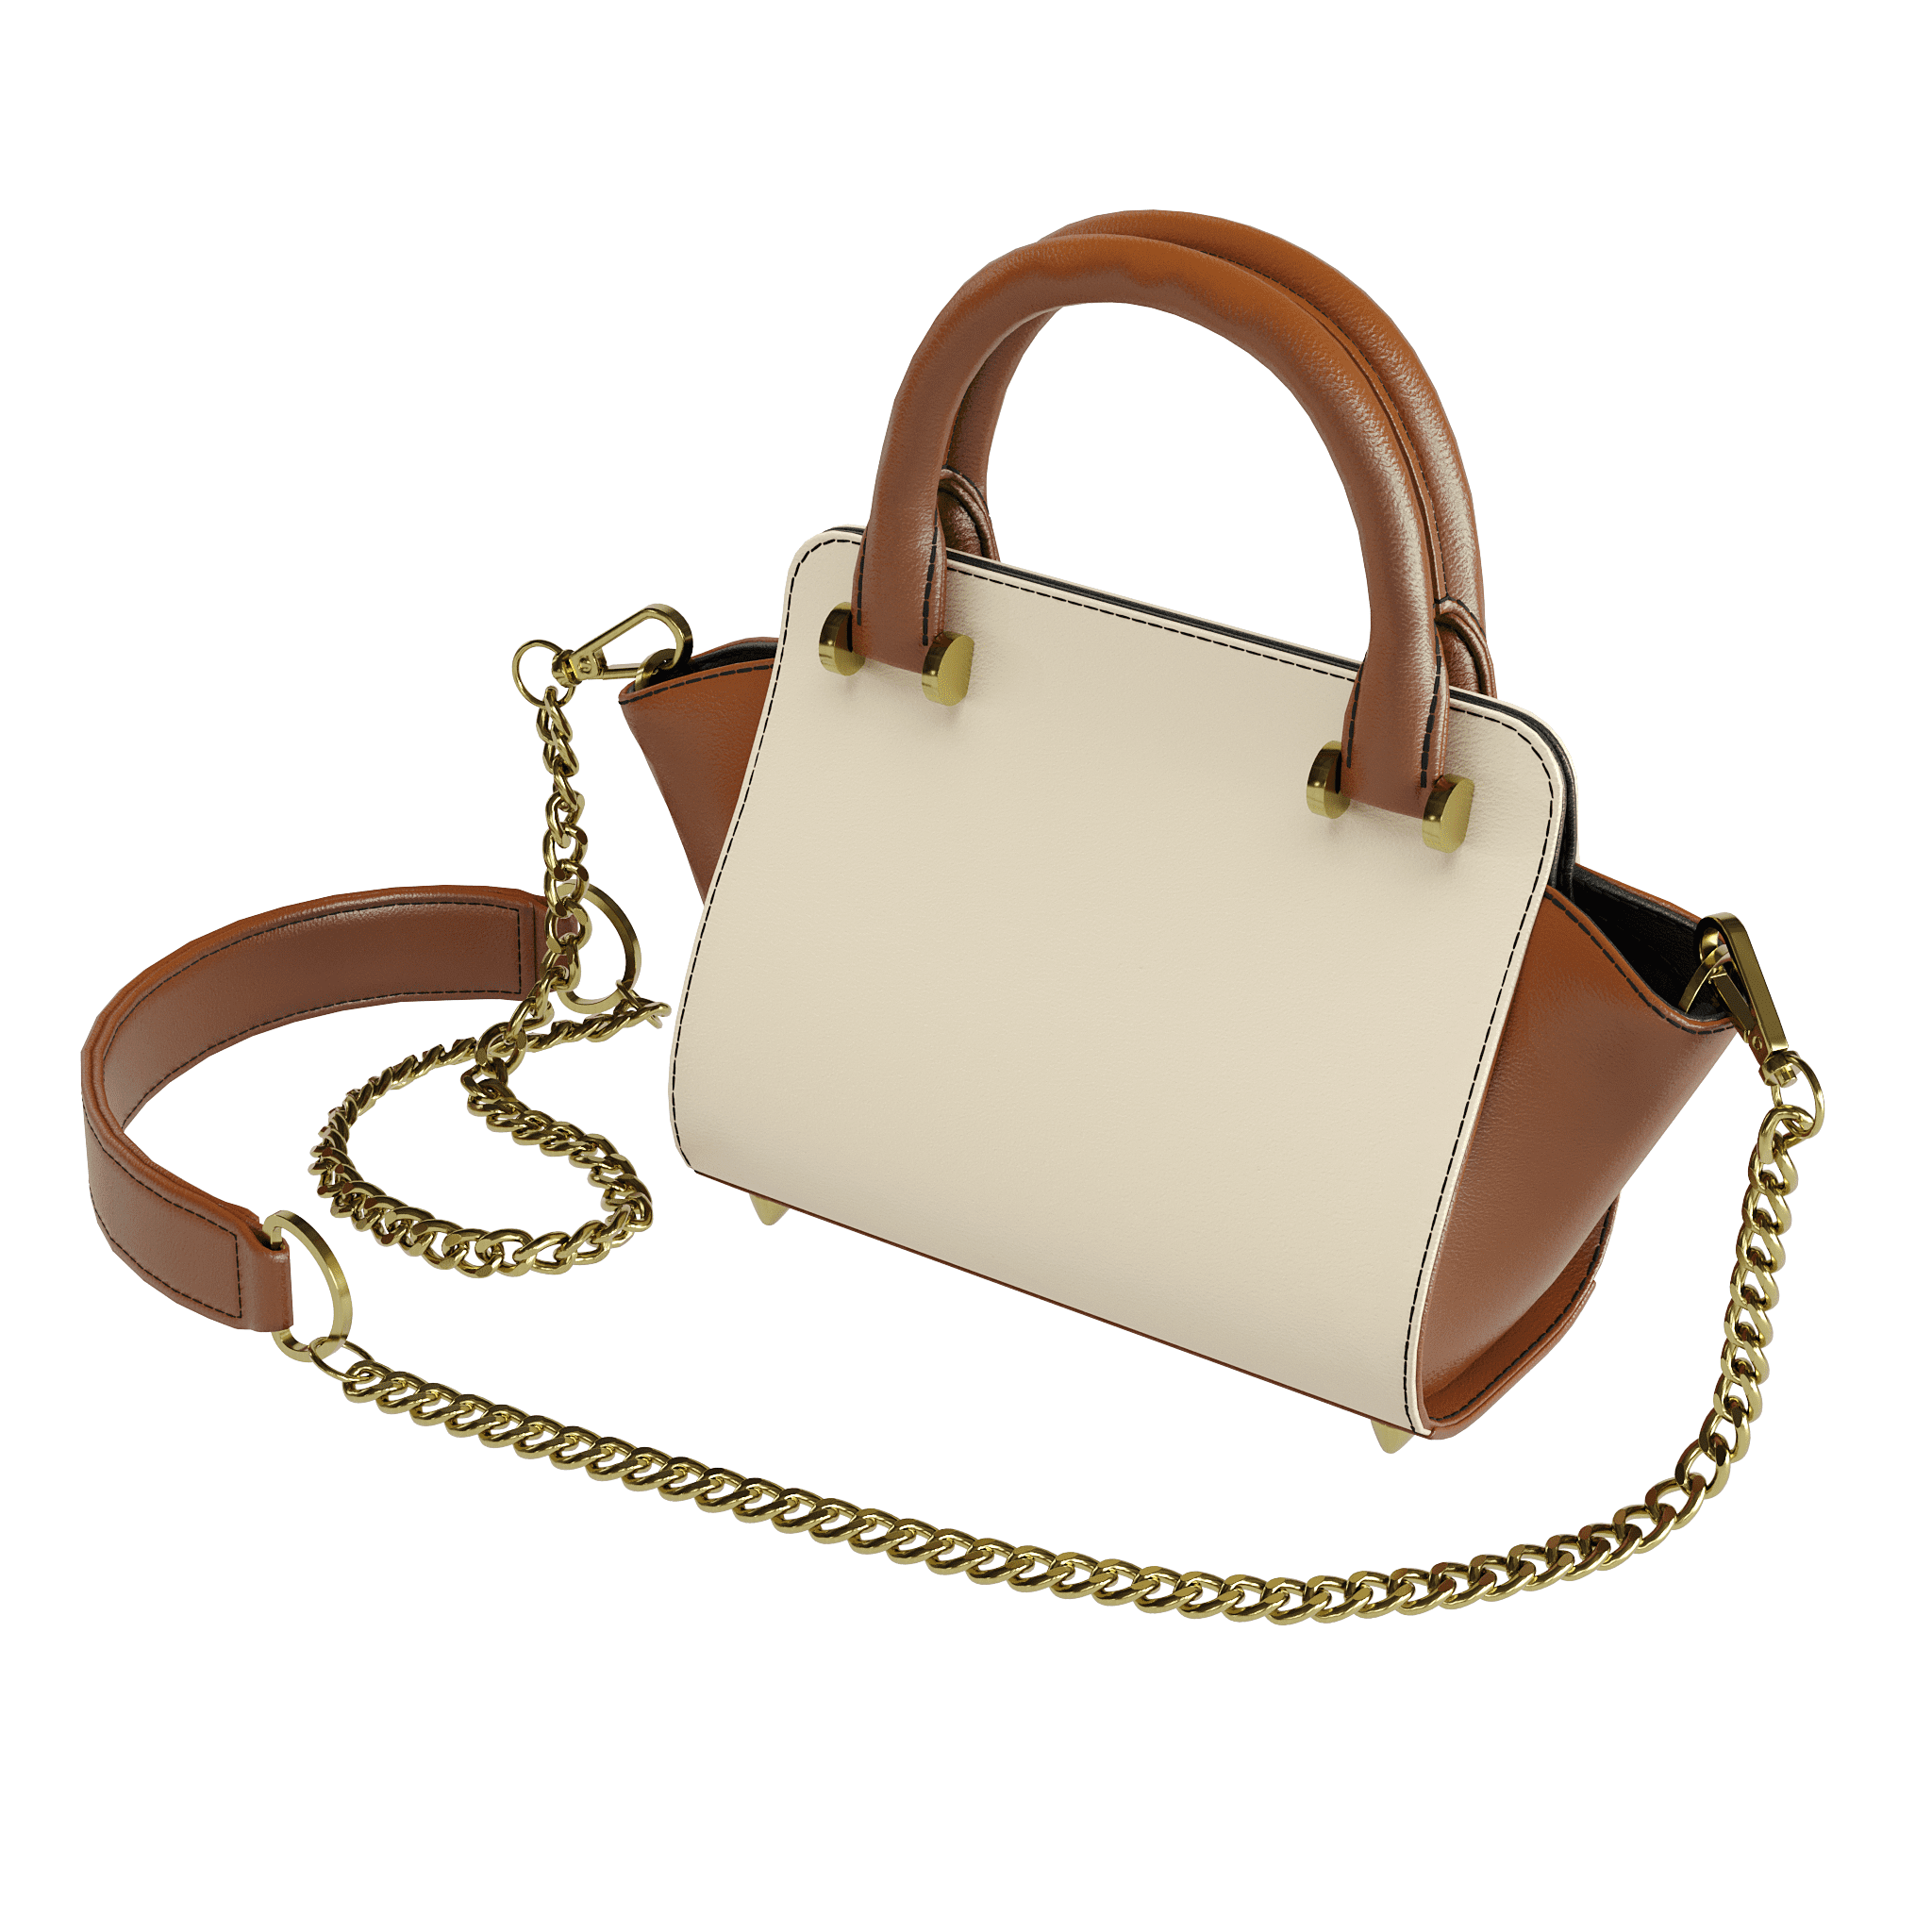 Cream Veggie Tanned Handbag With Dark Brown Accents